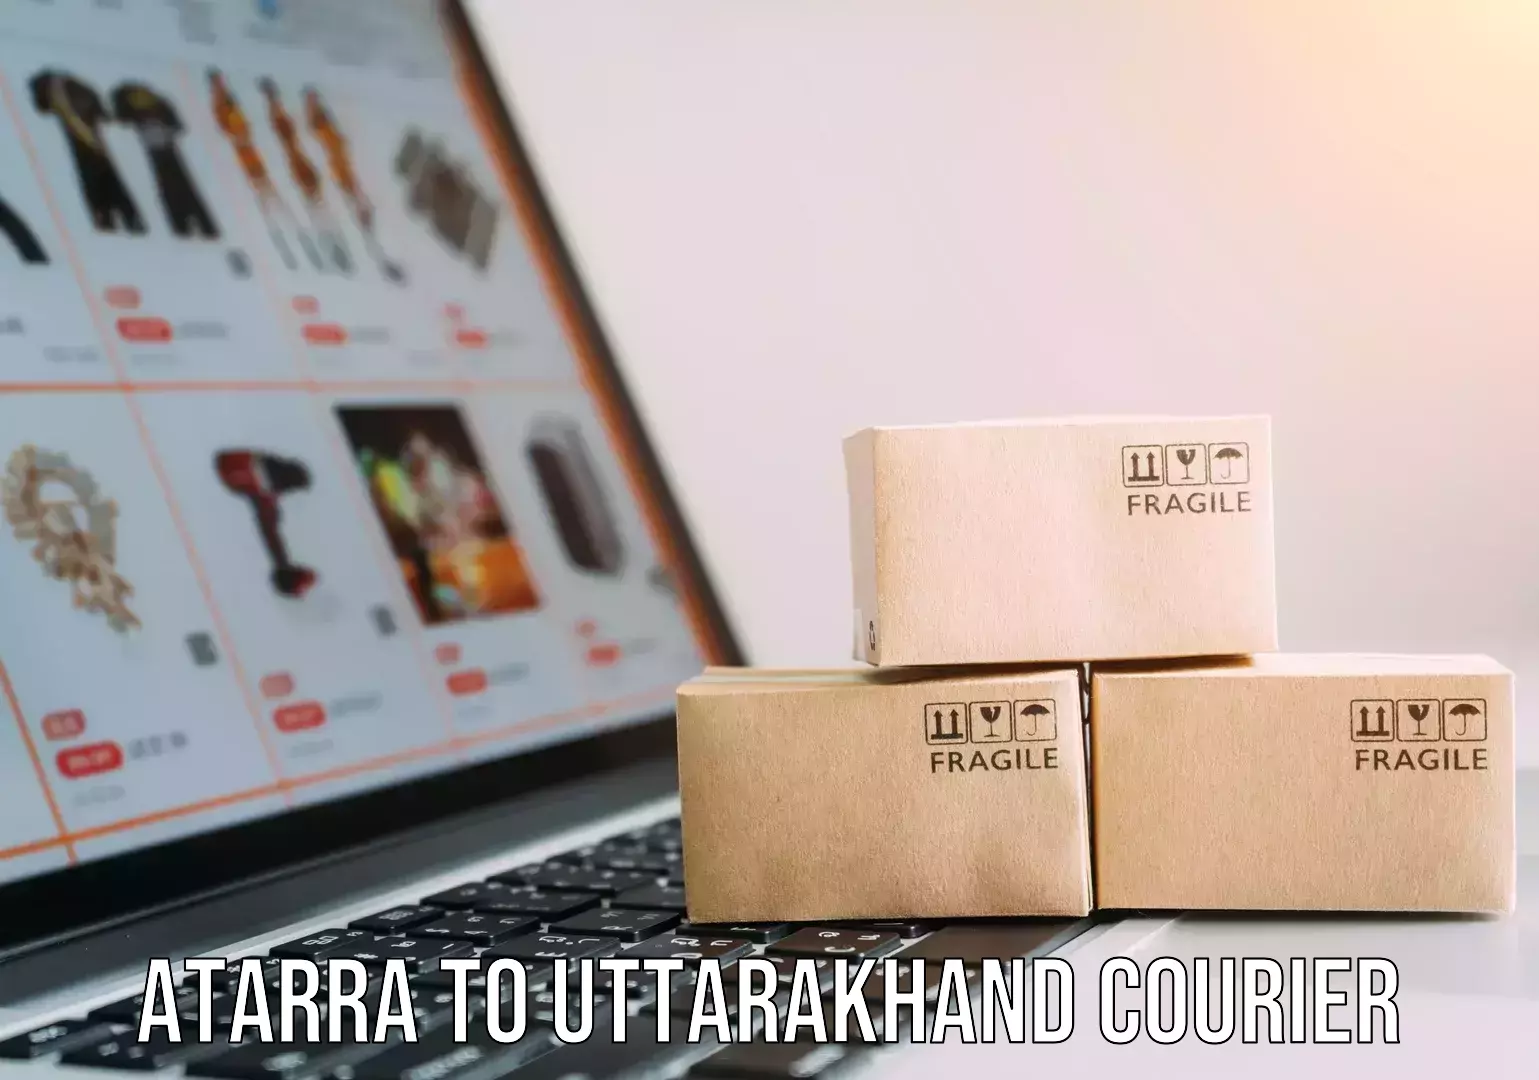 Custom courier packaging Atarra to Uttarakhand